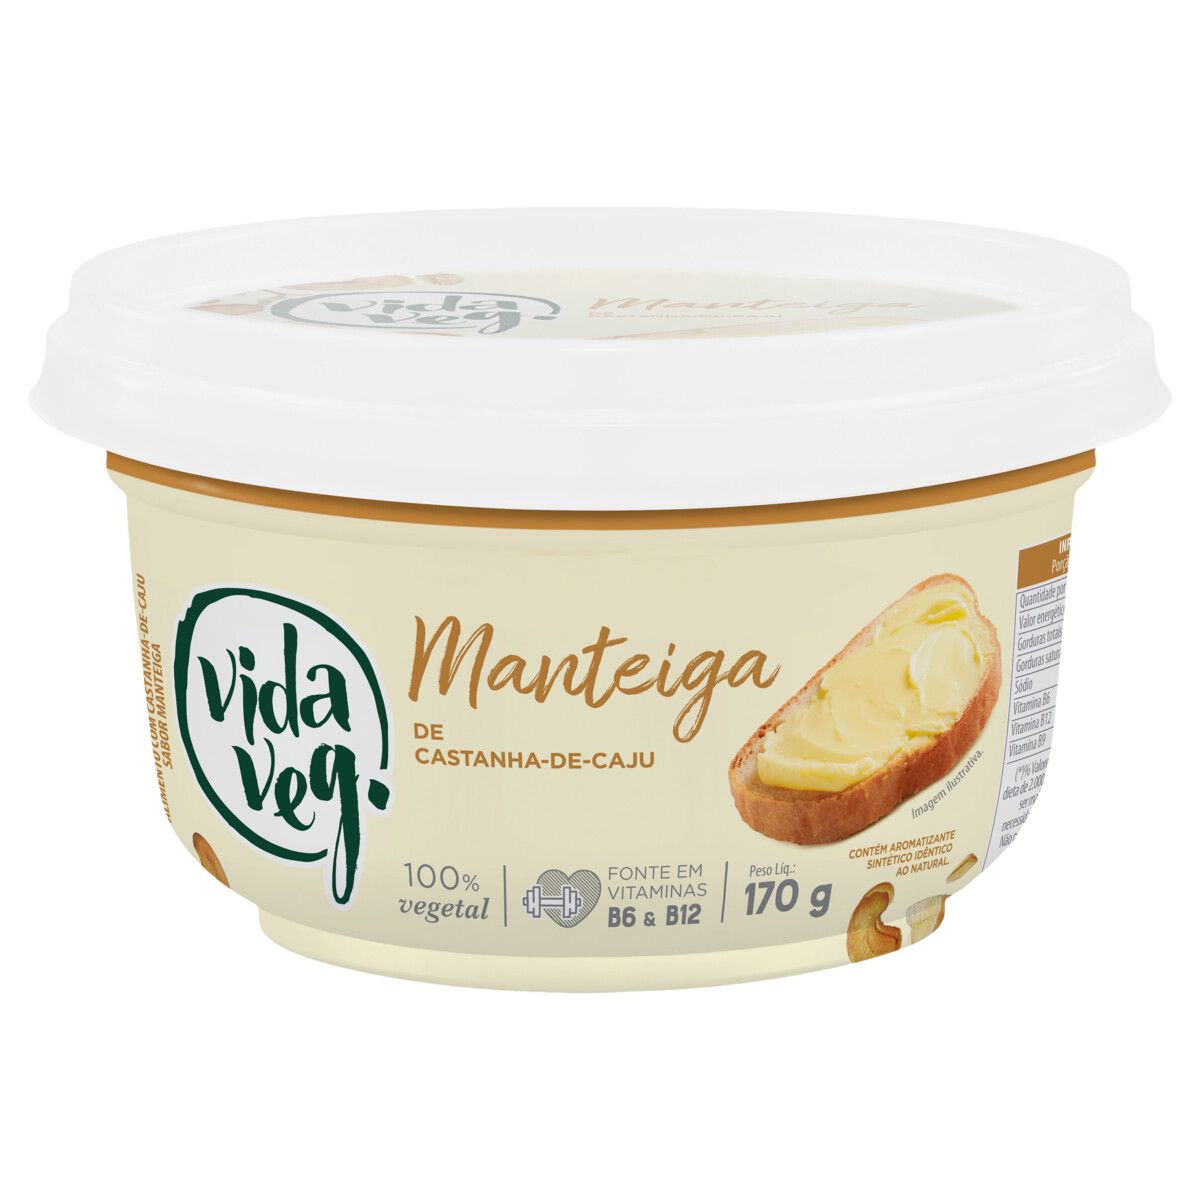 Manteiga com Castanha-de-Caju e Sal do Himalaia Zero Lactose Vida Veg Pote 170g image number 0